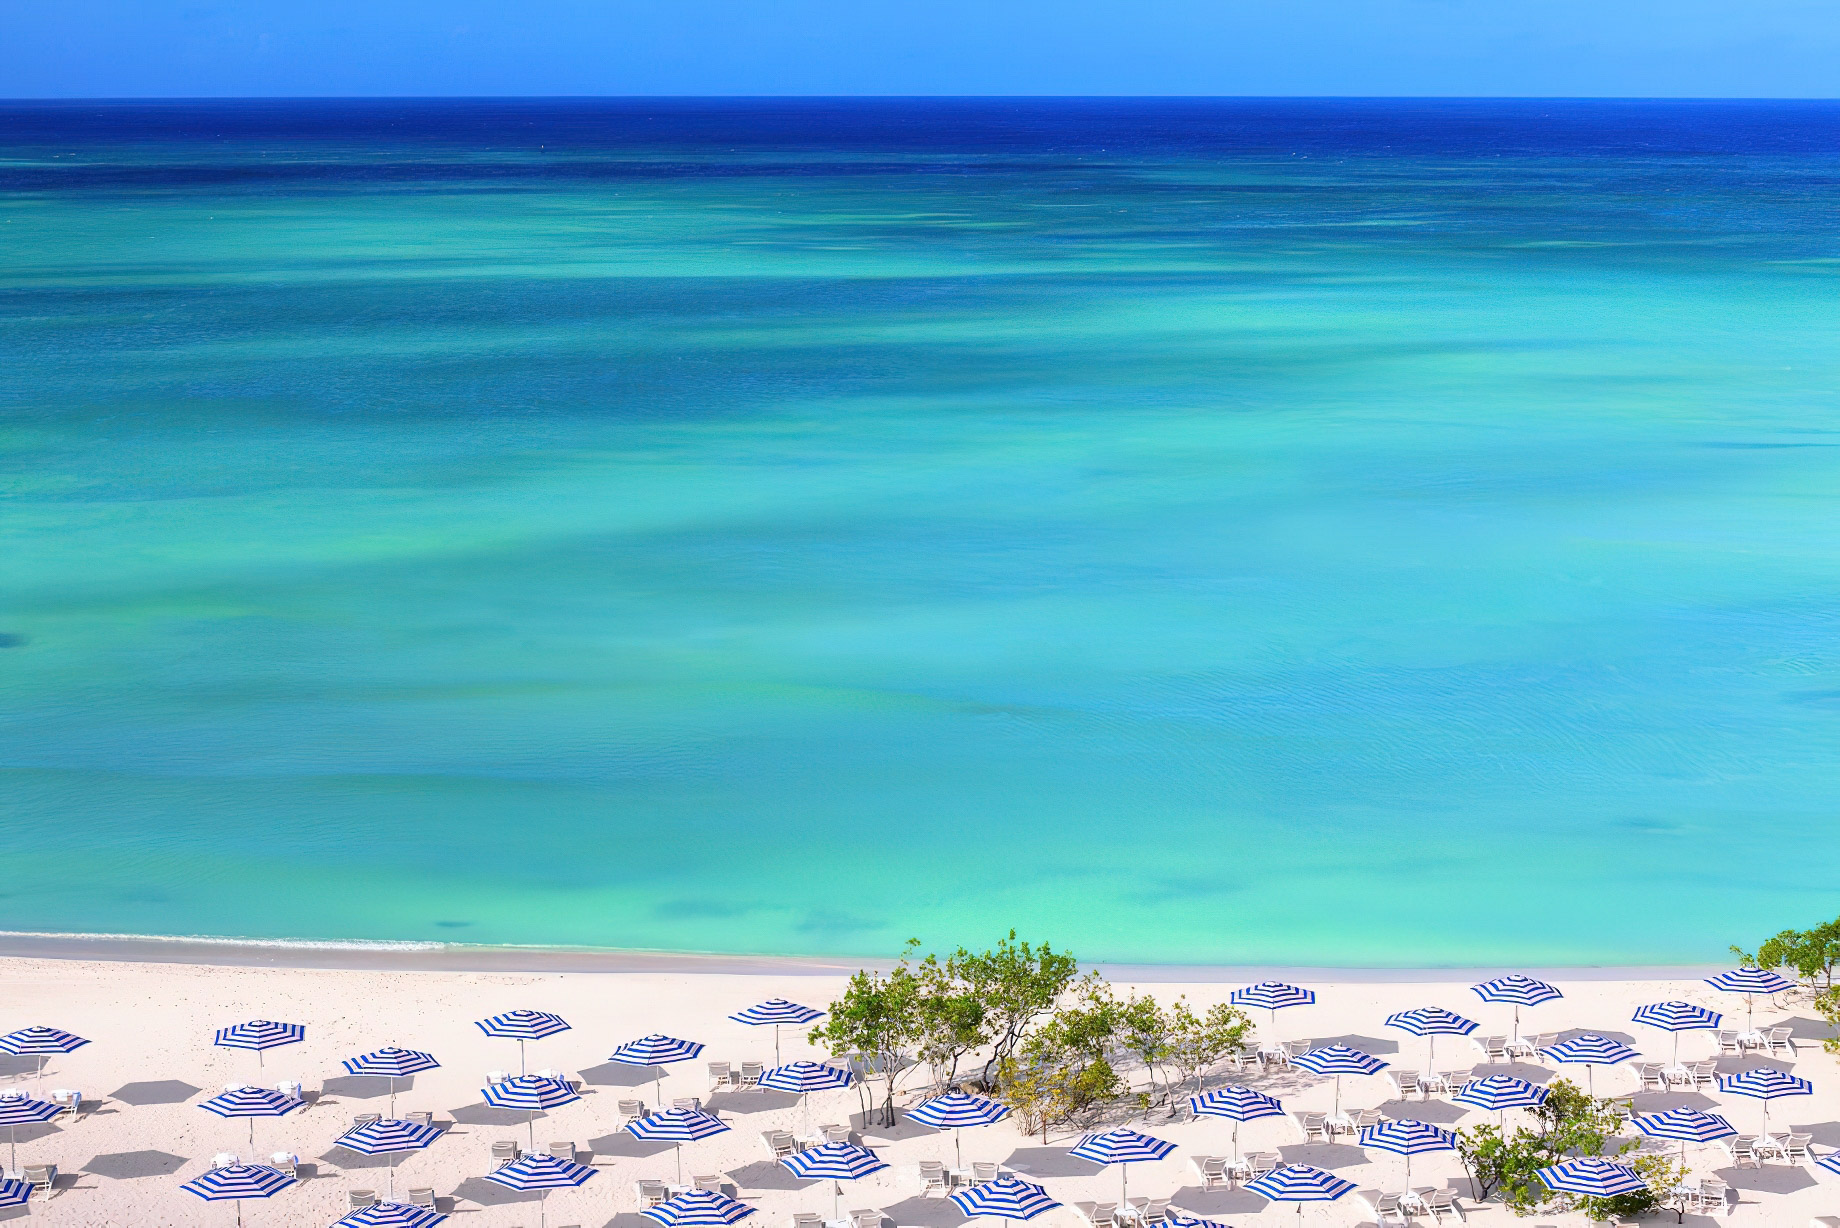 The Ritz-Carlton, Aruba Resort – Palm Beach, Aruba – Beach Umbrellas